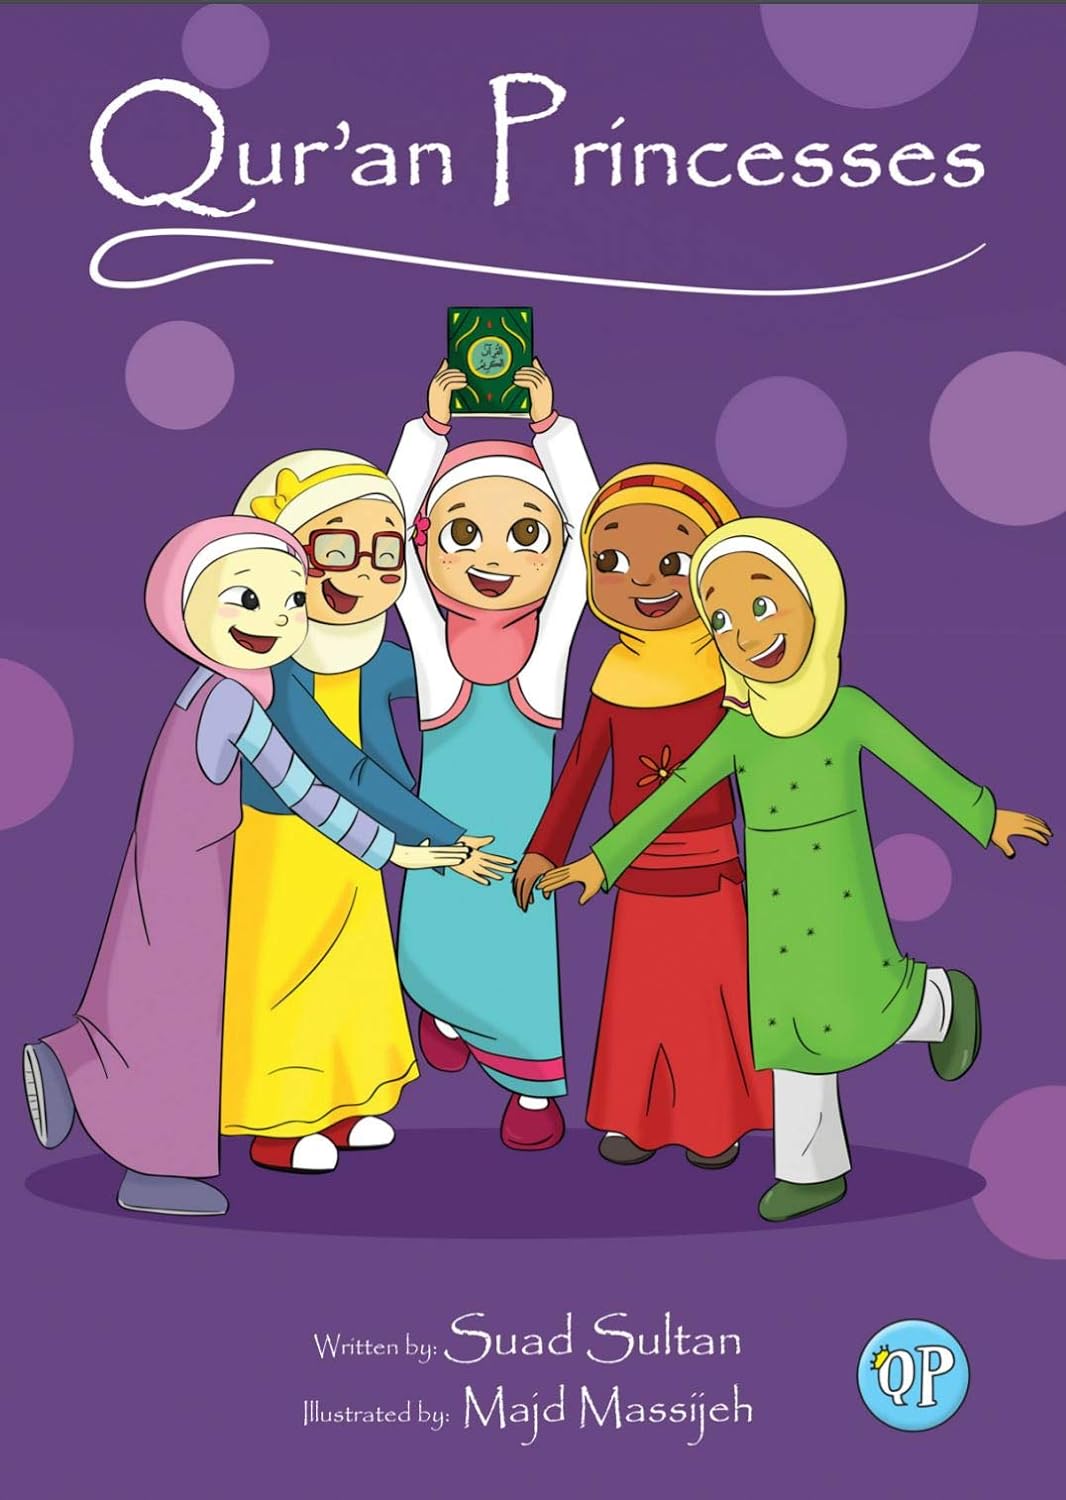 Qur'an Princesses